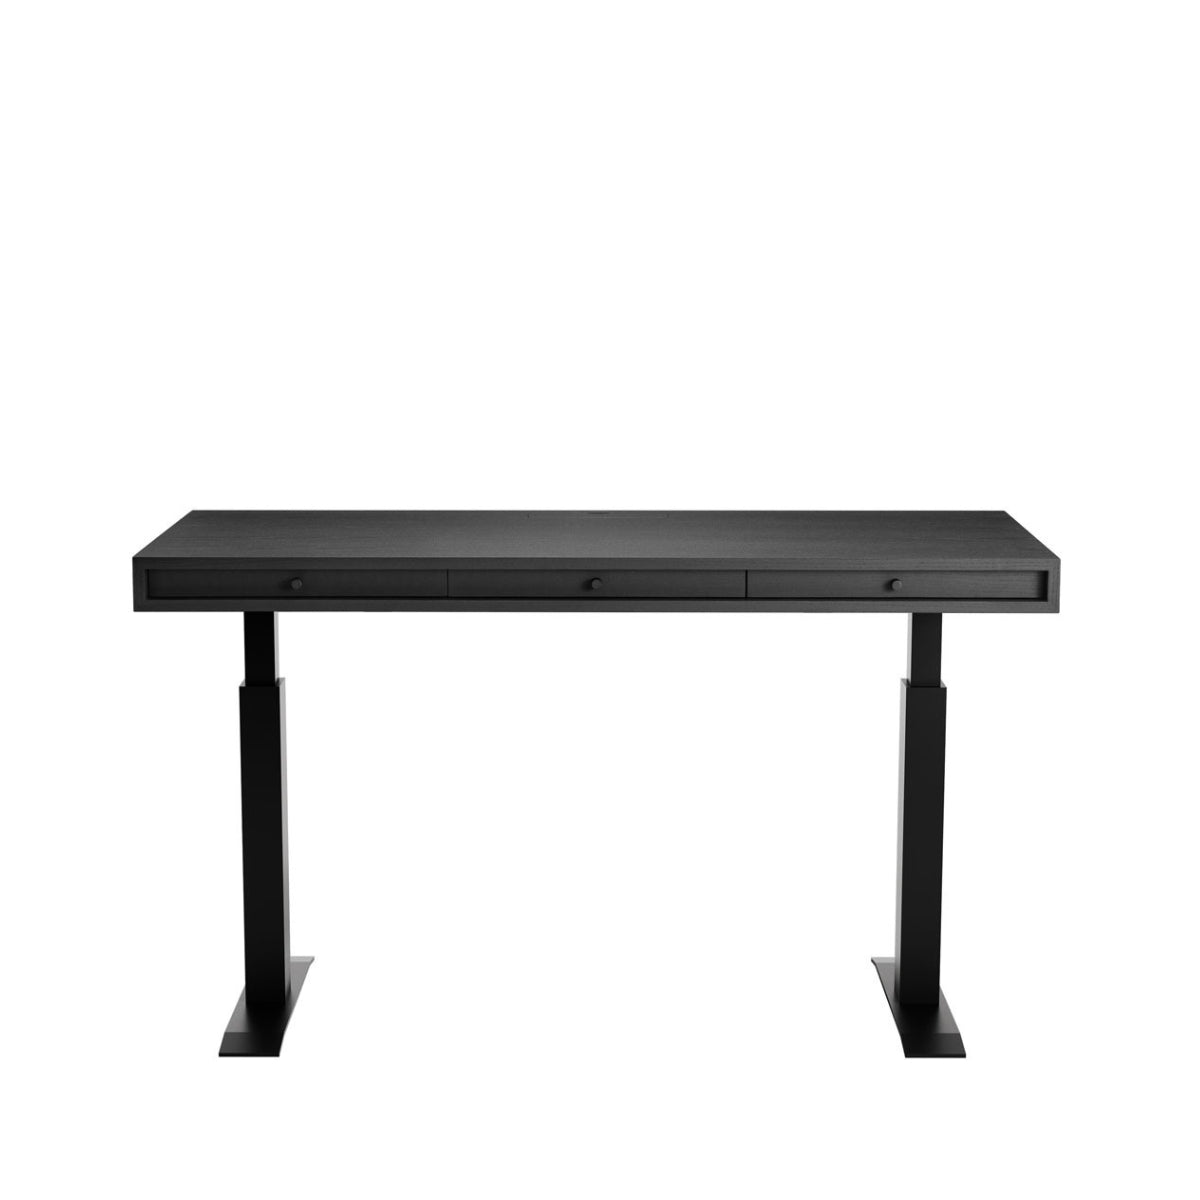 NORR11 | JFK Desk - Hight adjustable